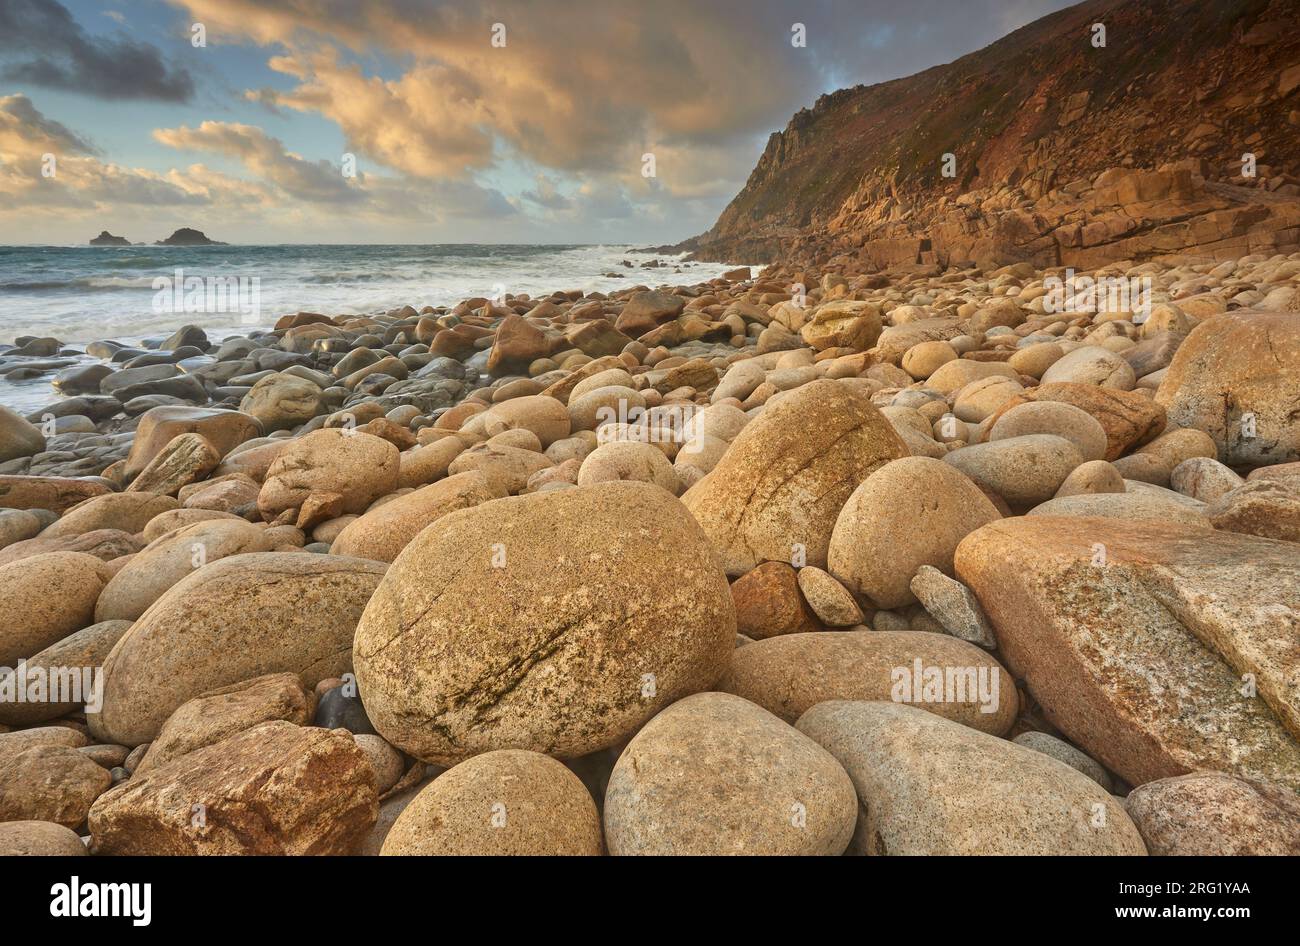 Una sponda ricoperta di massi di granito in una baia sulla costa atlantica dell’estrema ovest della Cornovaglia; Porth Nanven, Cot Valley, St Just, Cornovaglia, REGNO UNITO Foto Stock